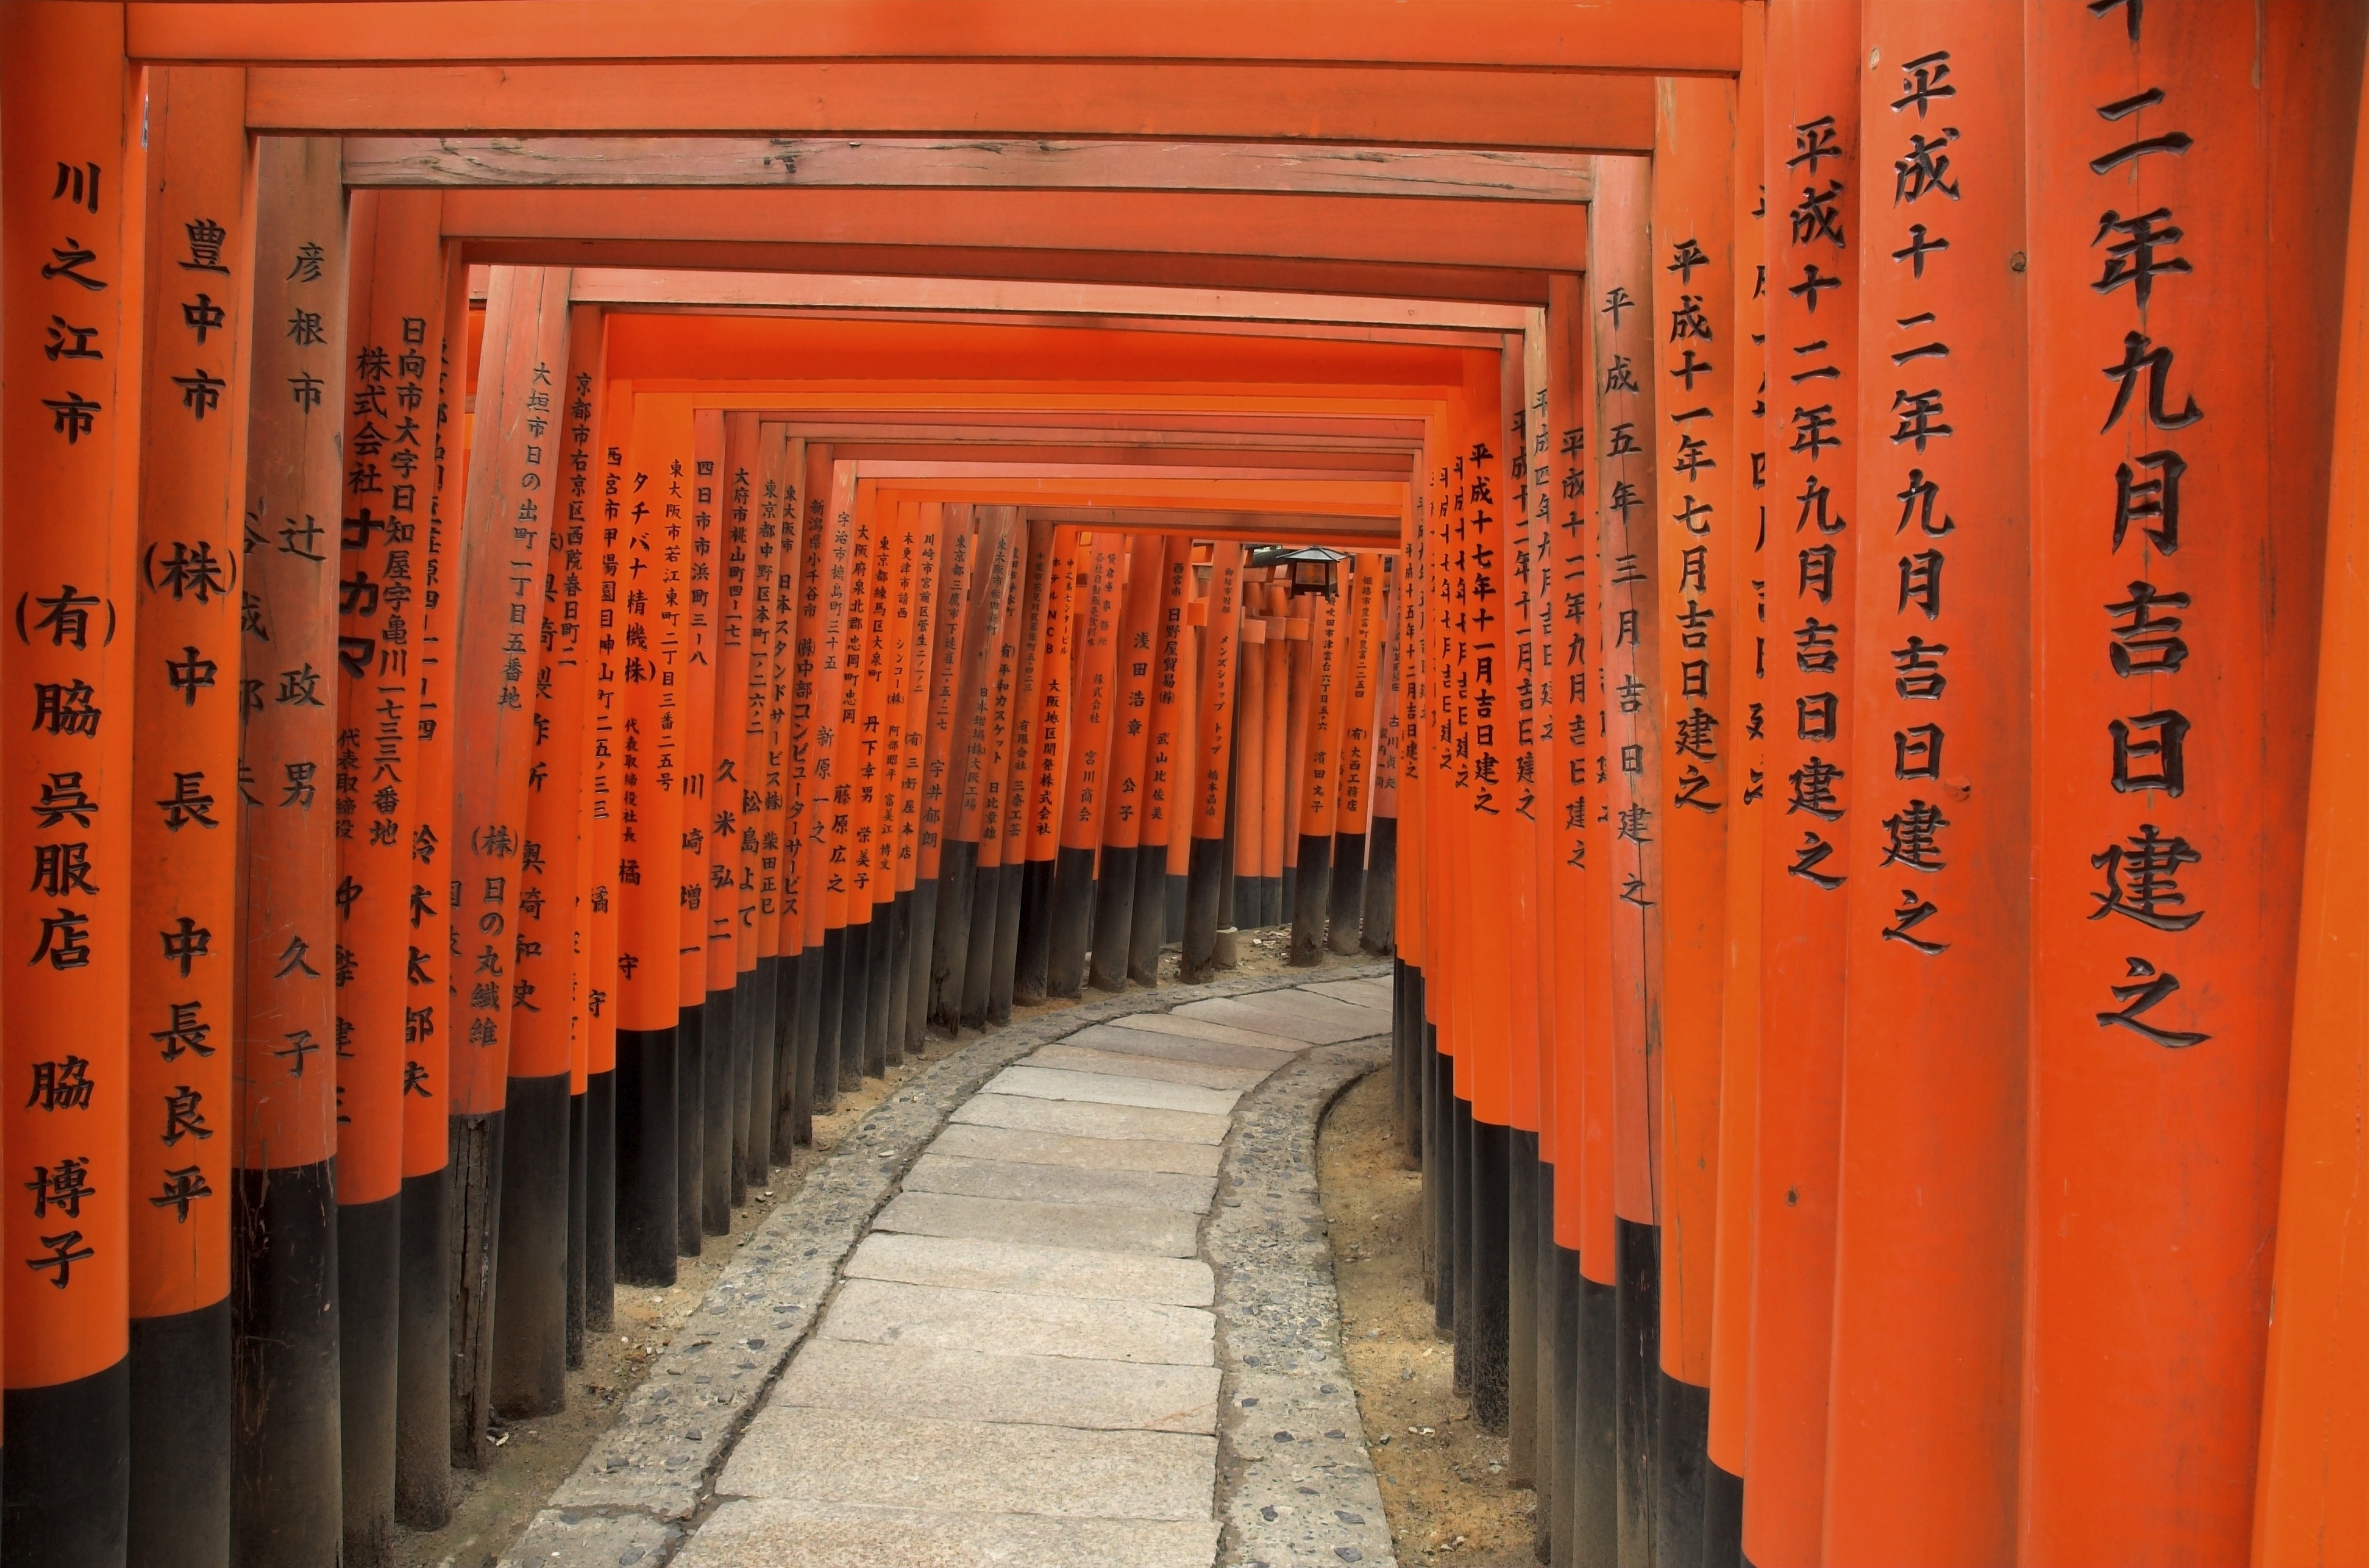 Torii gates at Fushimi Inari Shrine, Kyoto, Japan